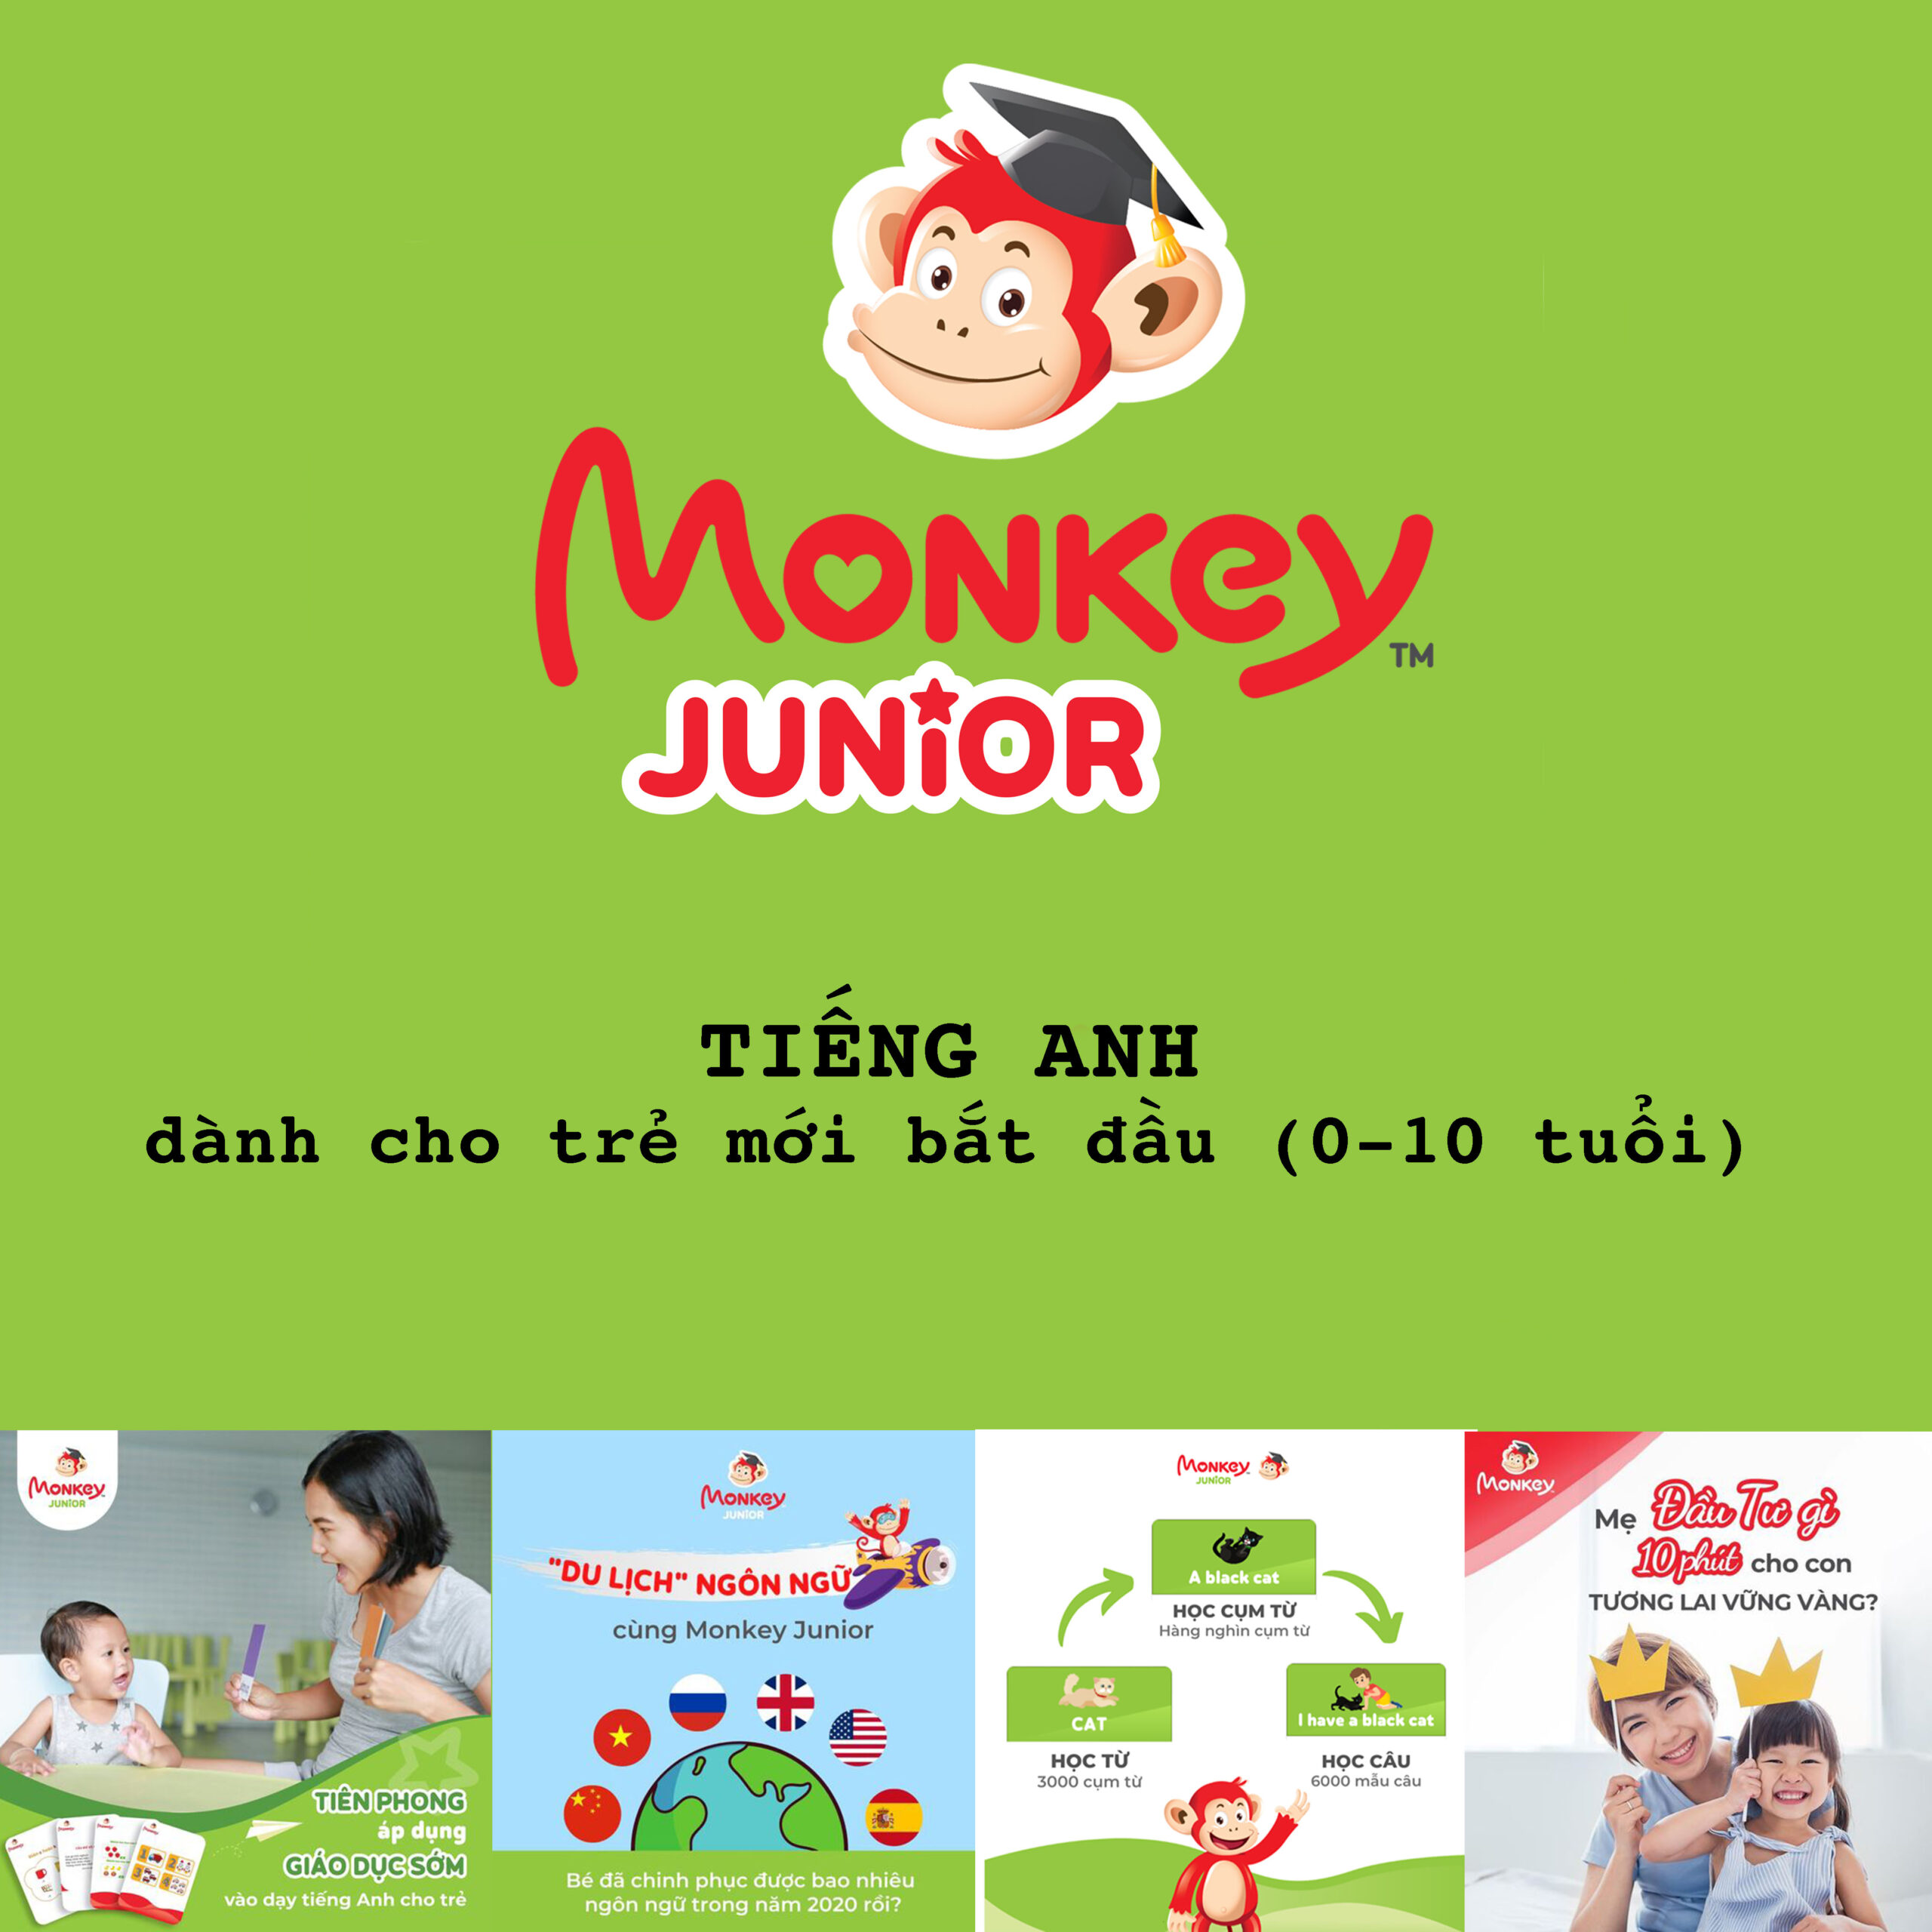 Monkey Junior - Tiếng Anh Cho Trẻ Mới Bắt Đầu - hinh 08